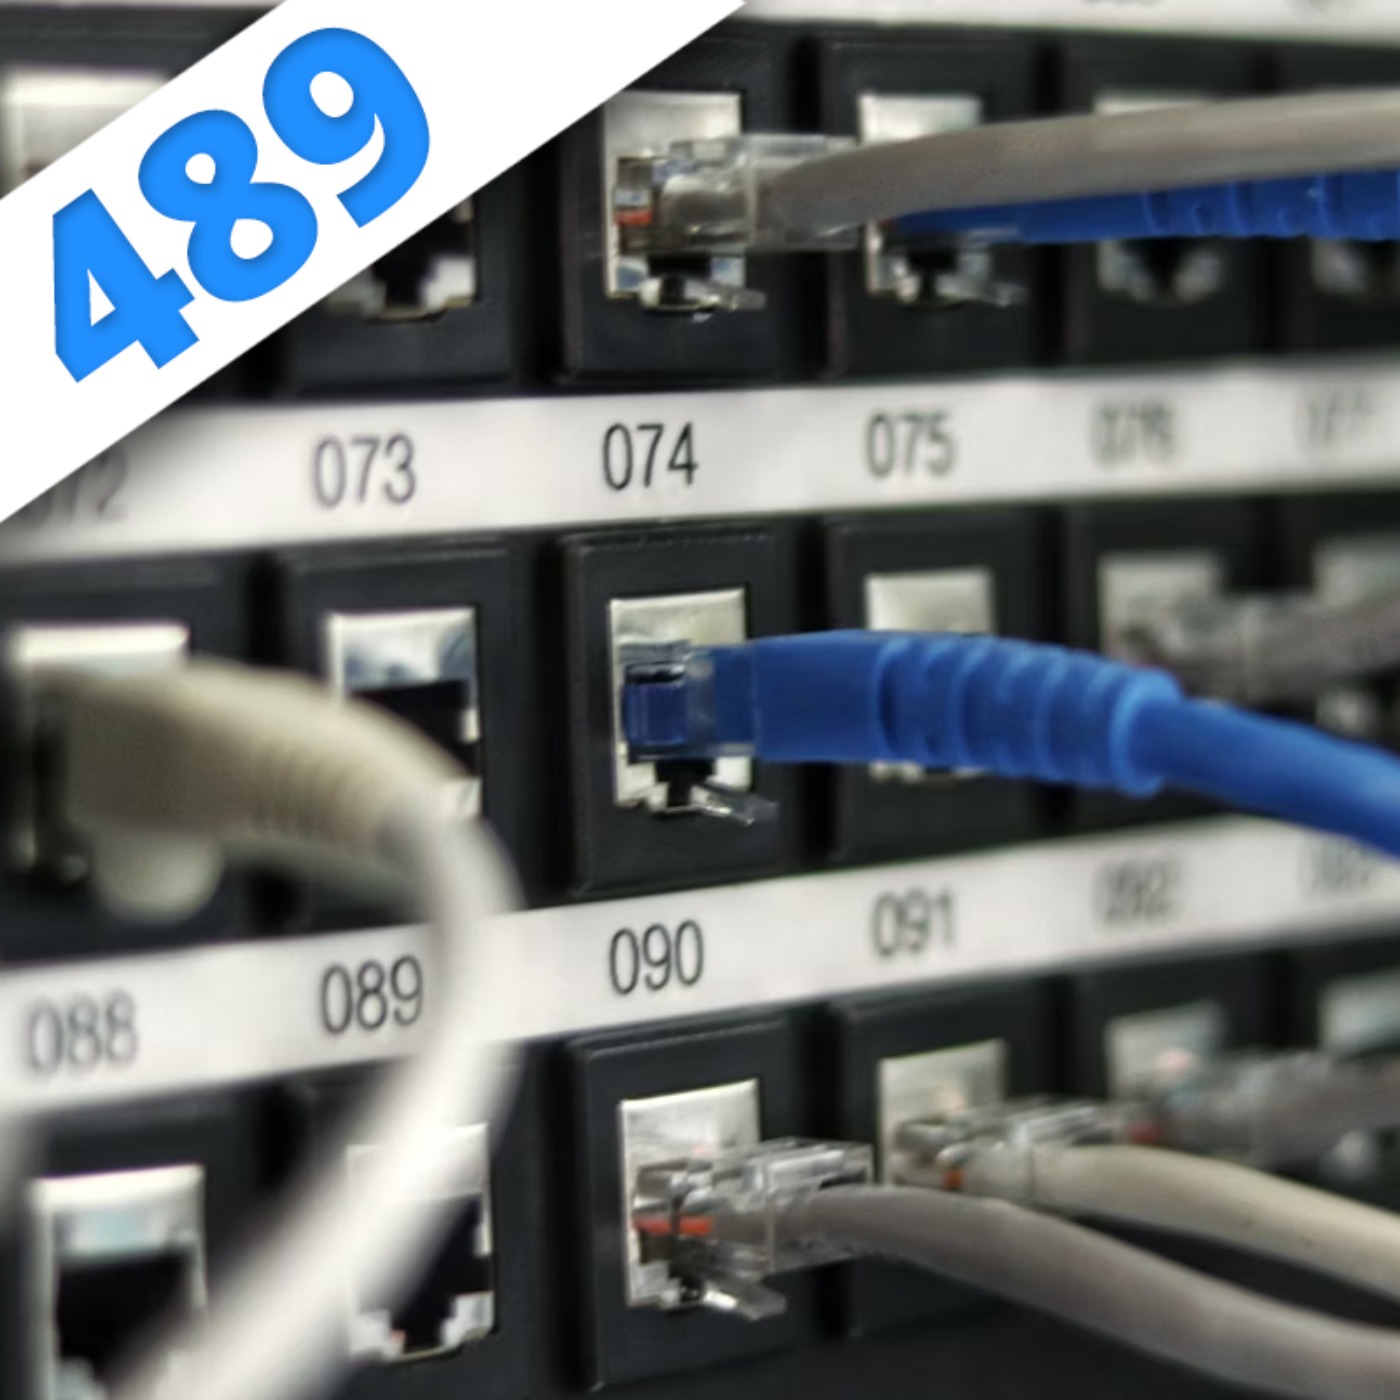 489 - Internet pète un câble, partie 1